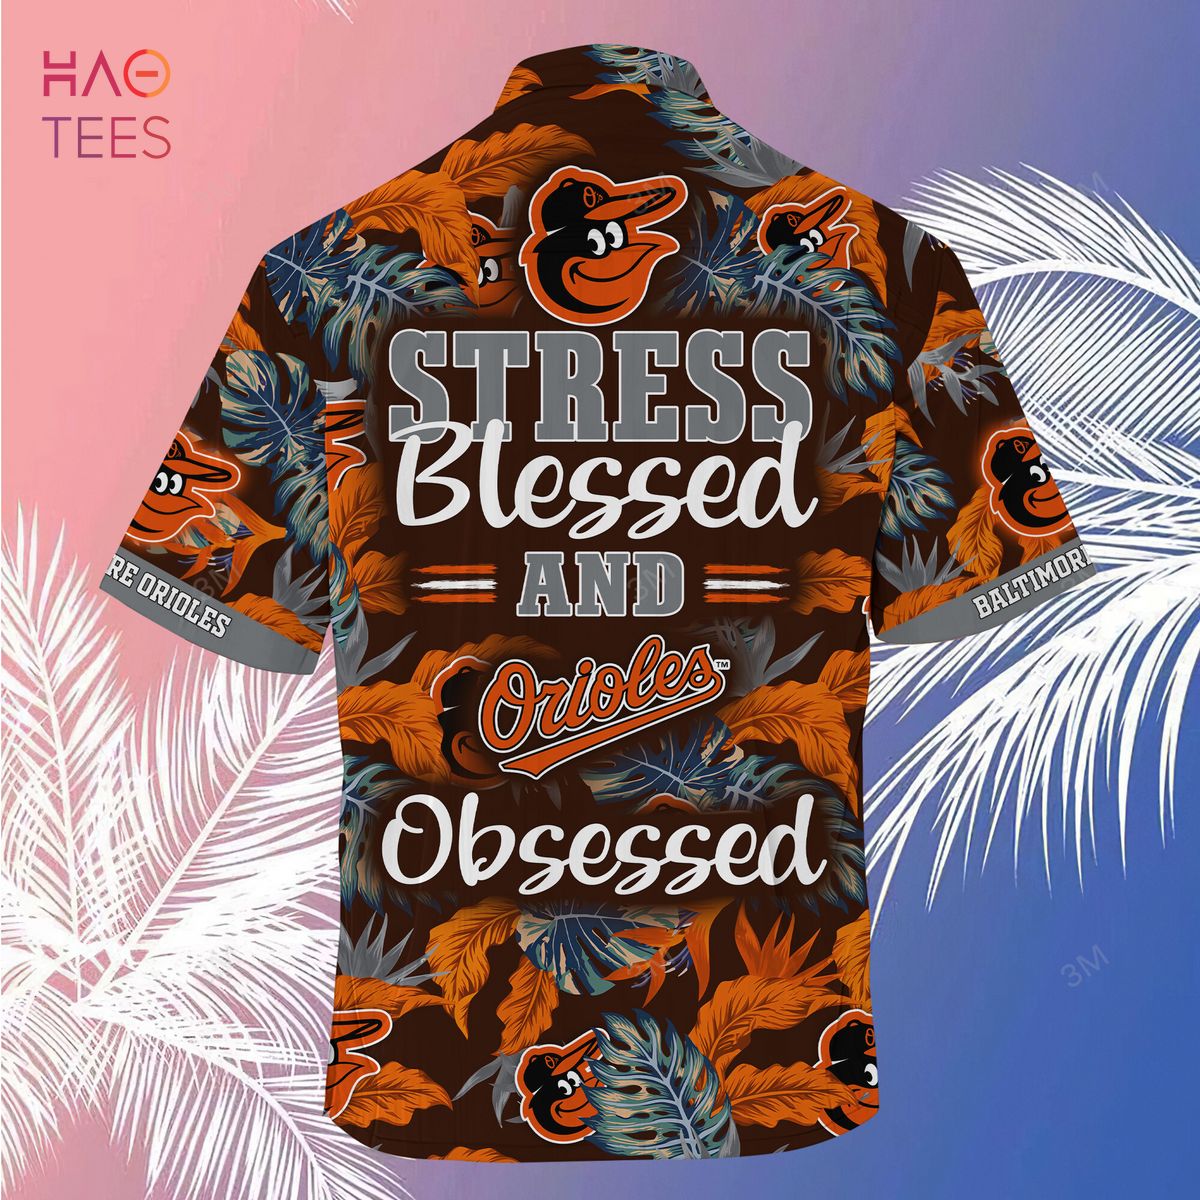 Baltimore Orioles Hawaiian Shirt Flower Summer – Orioles Hawaiian Shirt -  Limotees